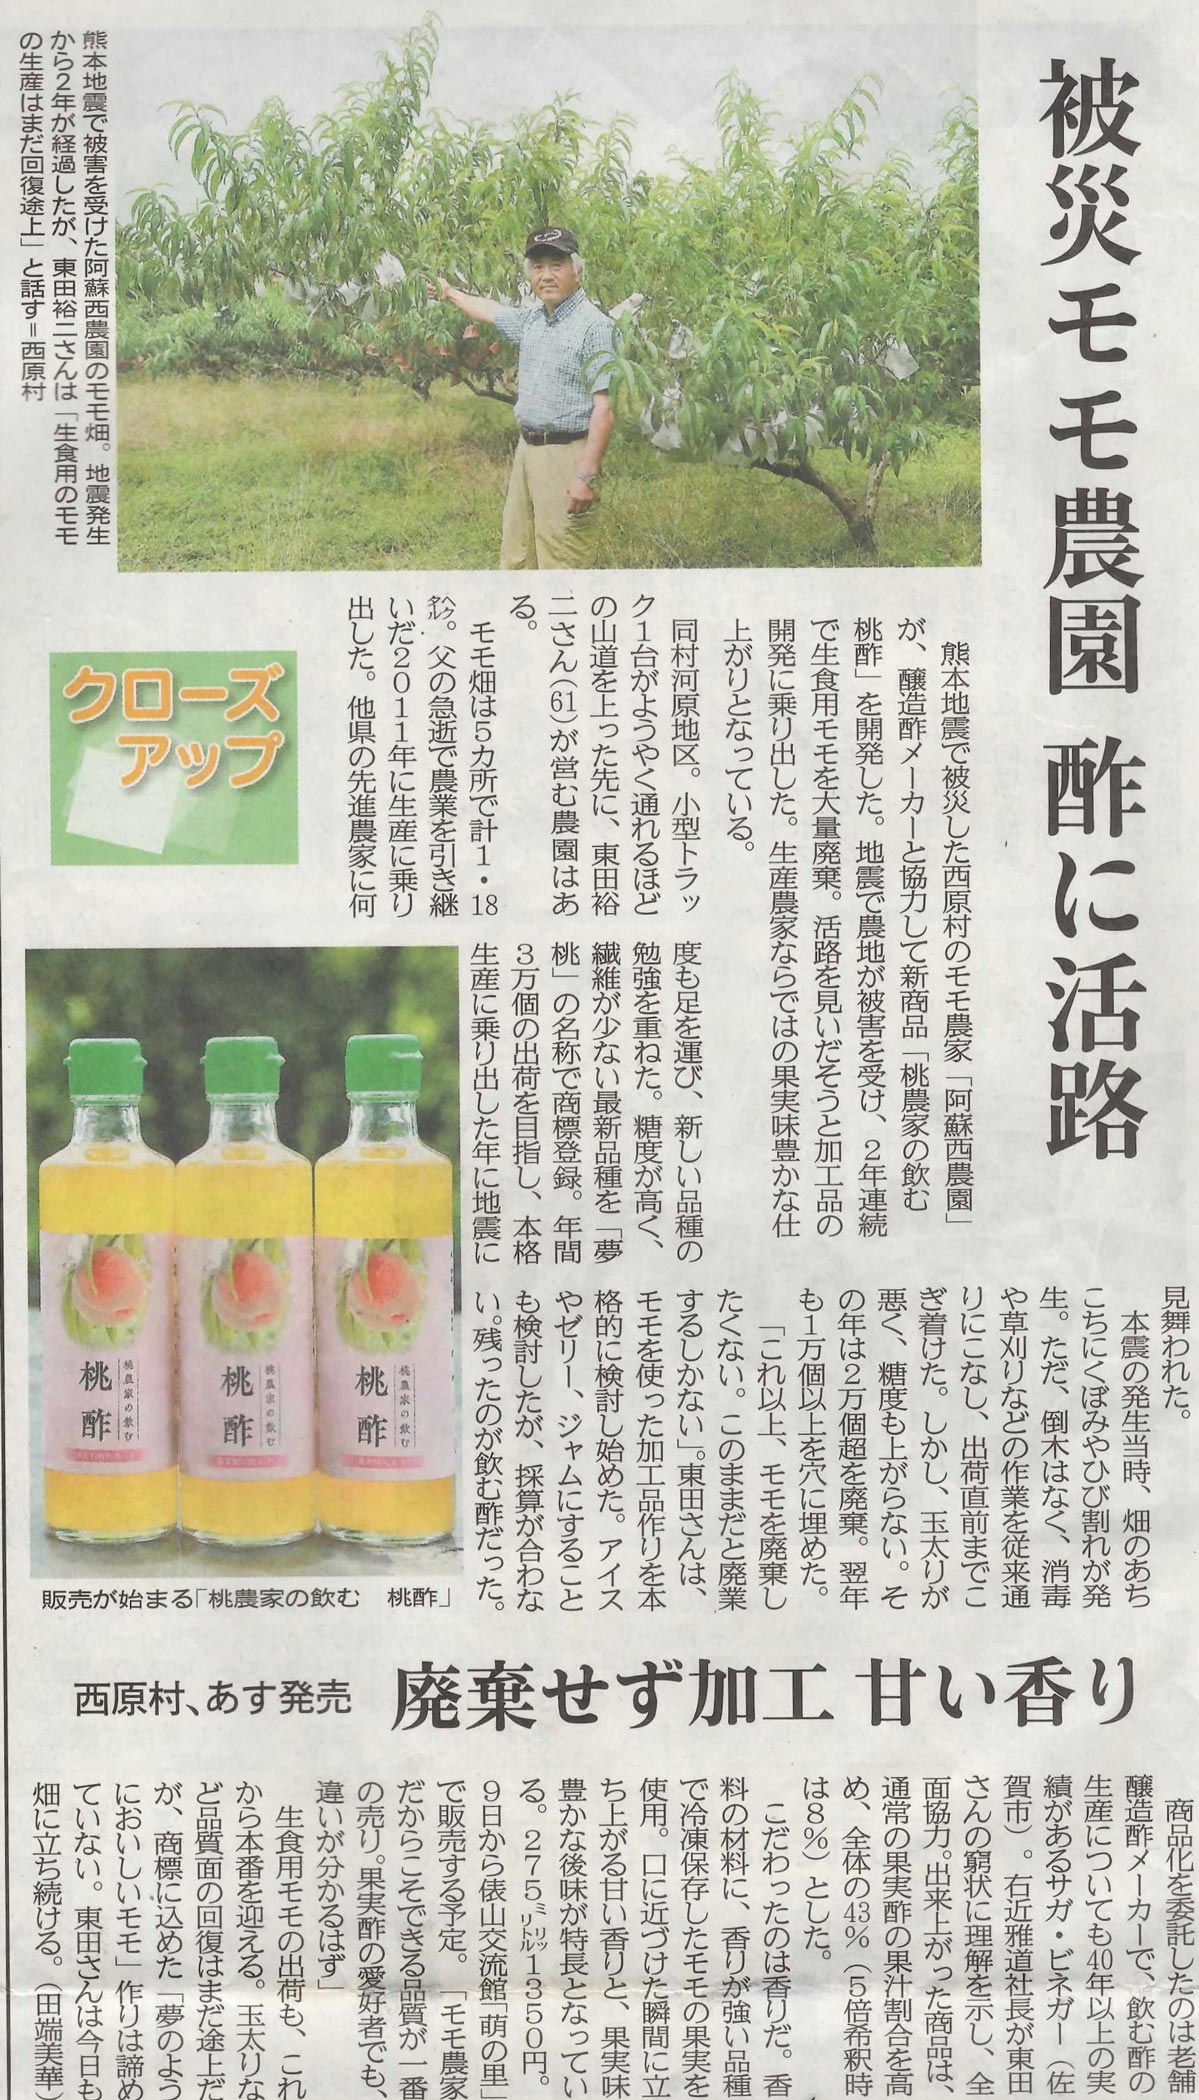 新聞掲載　2018年(平成30年)7月8日　熊本日日新聞　「被災もも農園酢に活路」